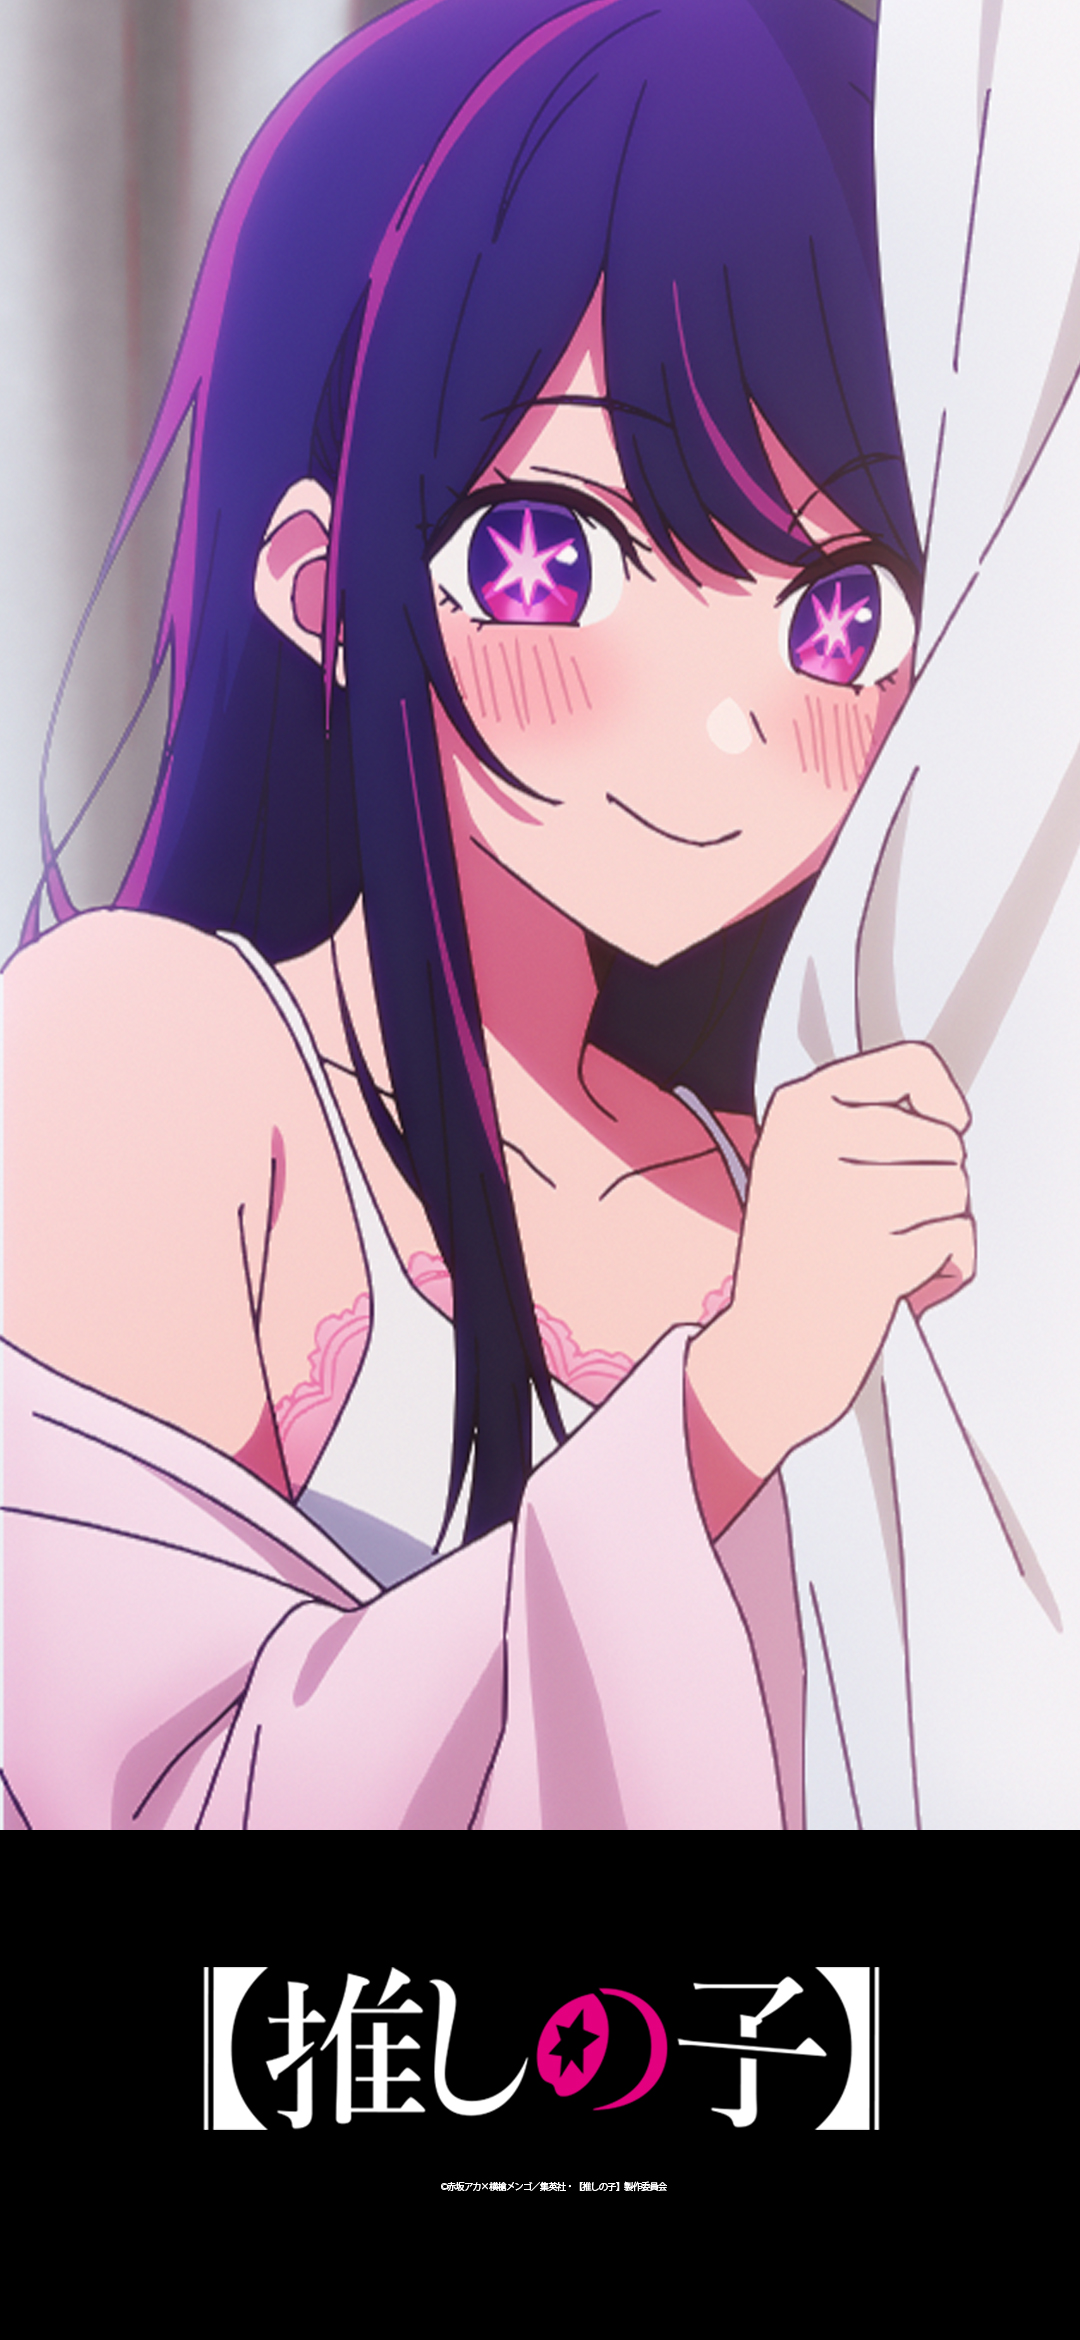 Anime Oshi No Ko Anime Girls Japanese Star Eyes Blushing Smiling Looking At Viewer Portrait Display  1080x2340